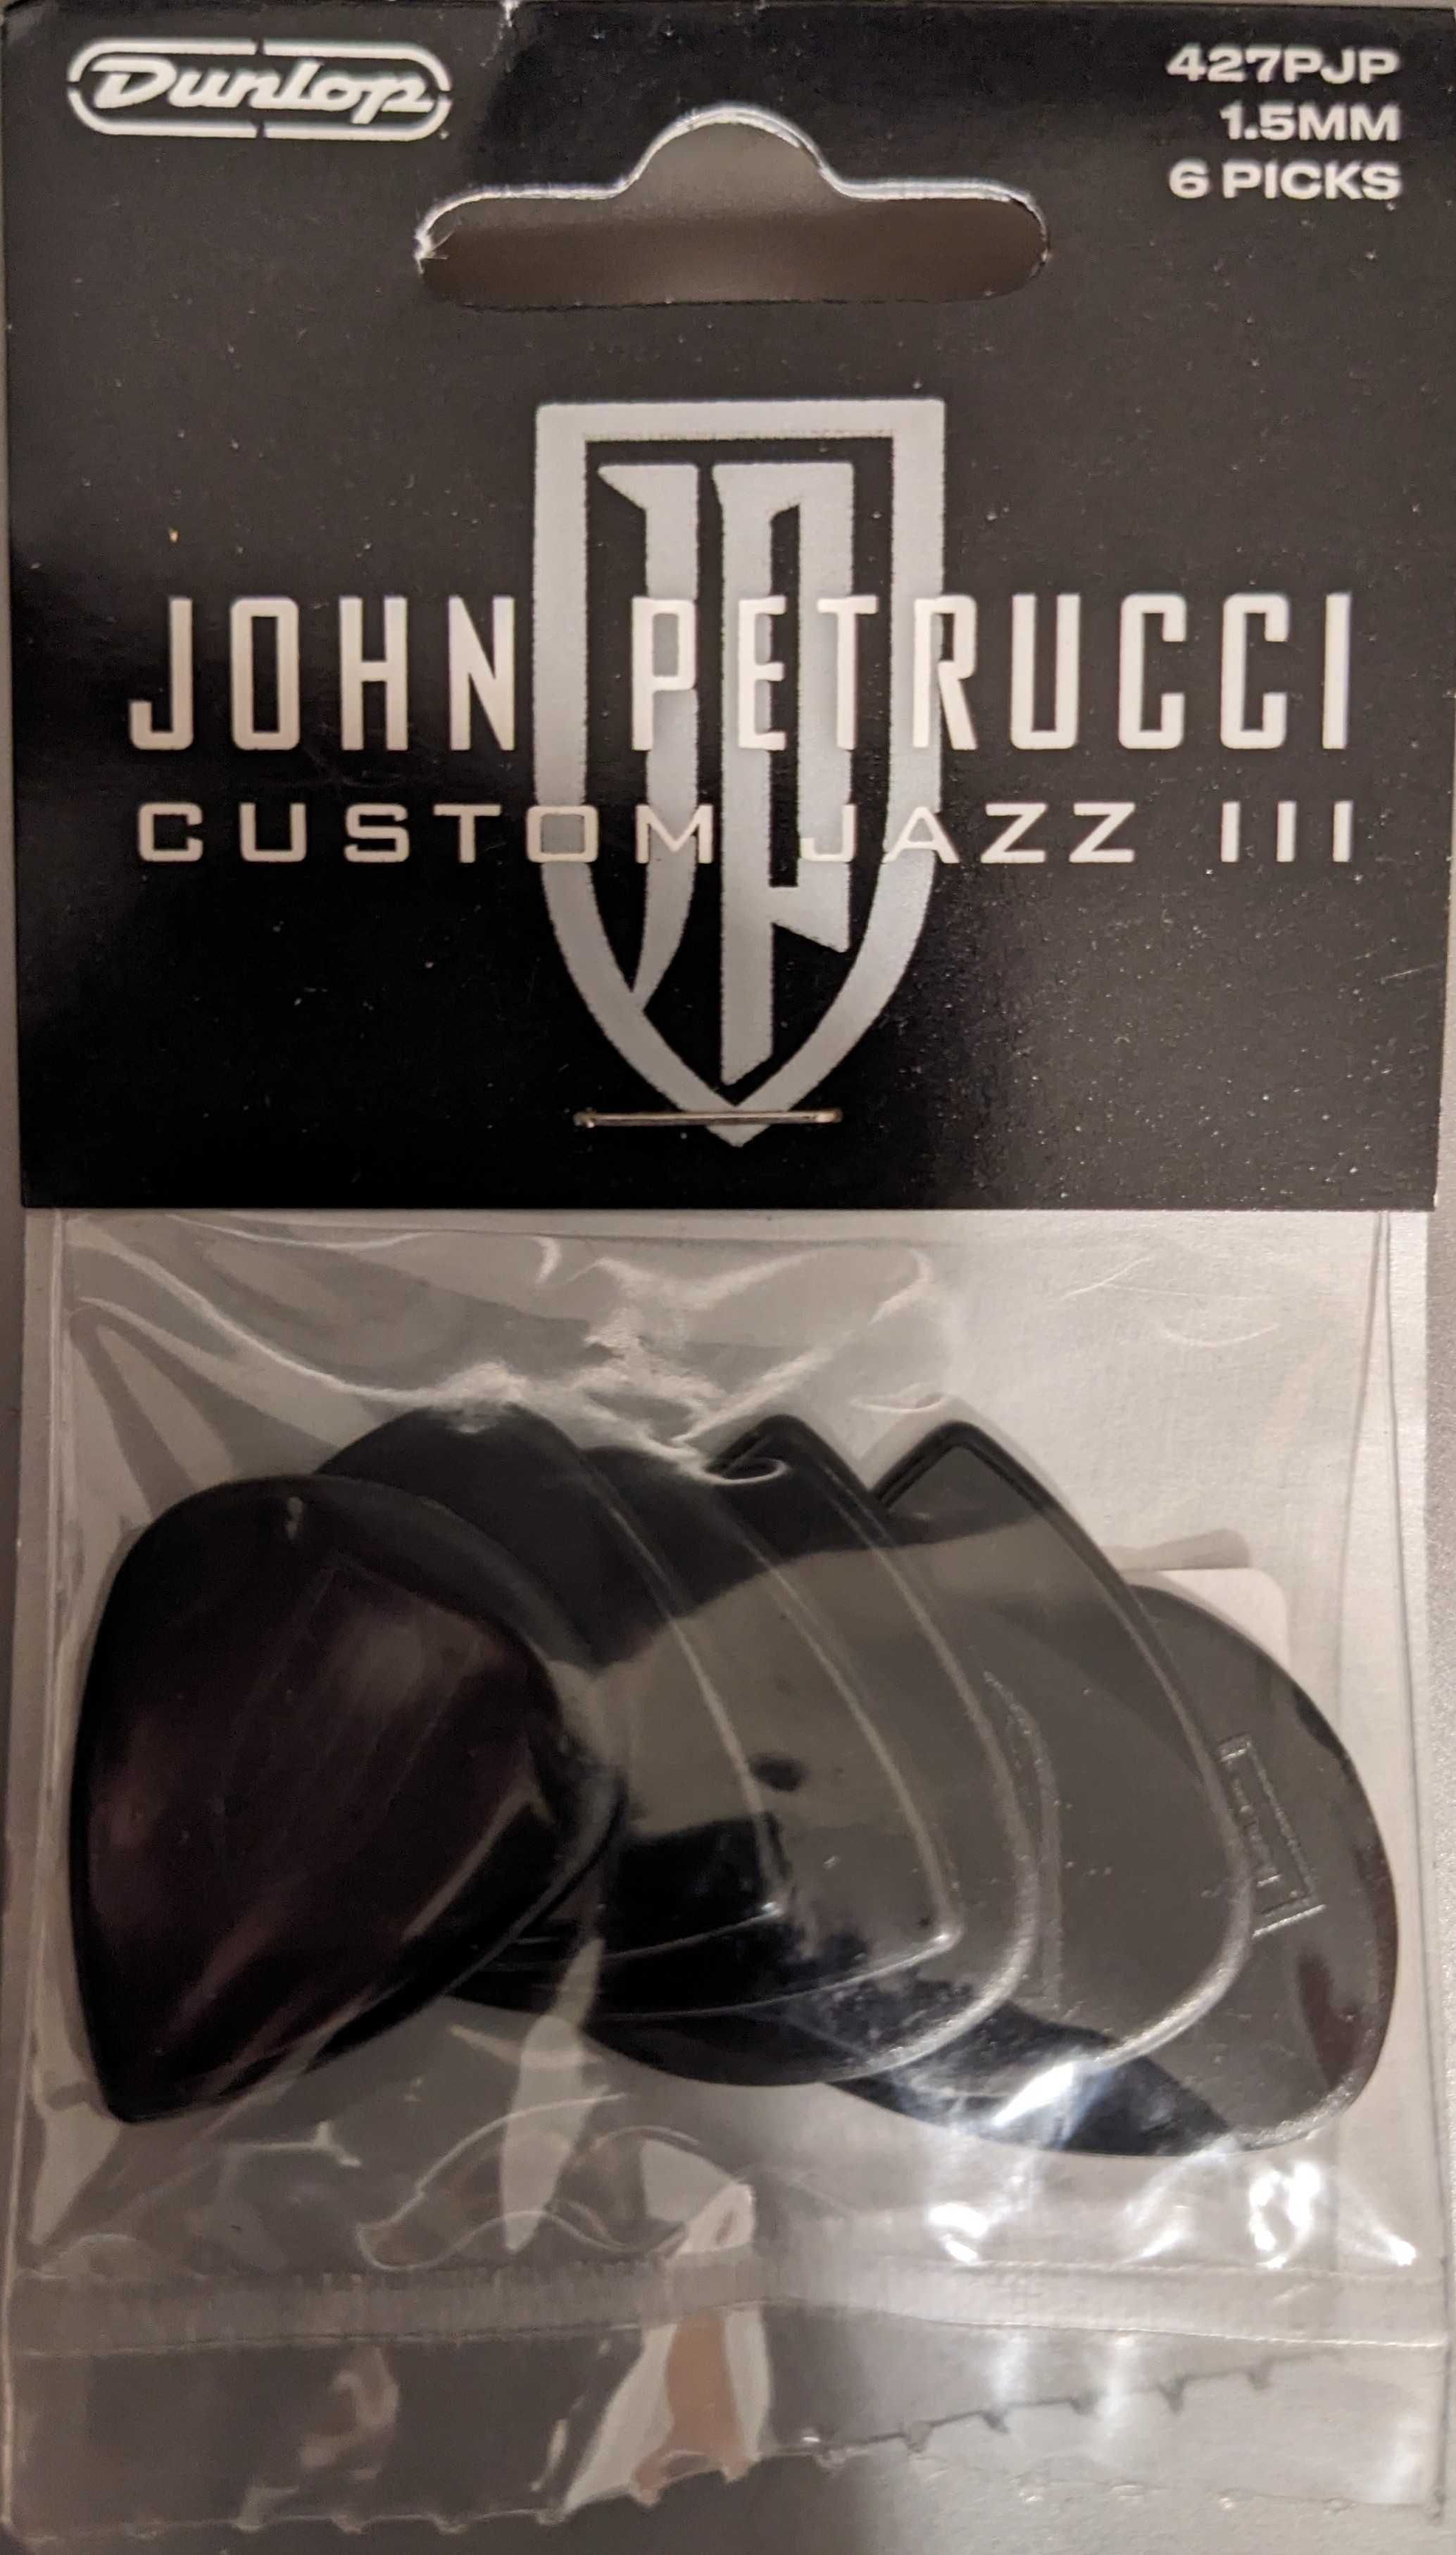 Kostki Dunlop Petrucci Jazz III 6 szt.